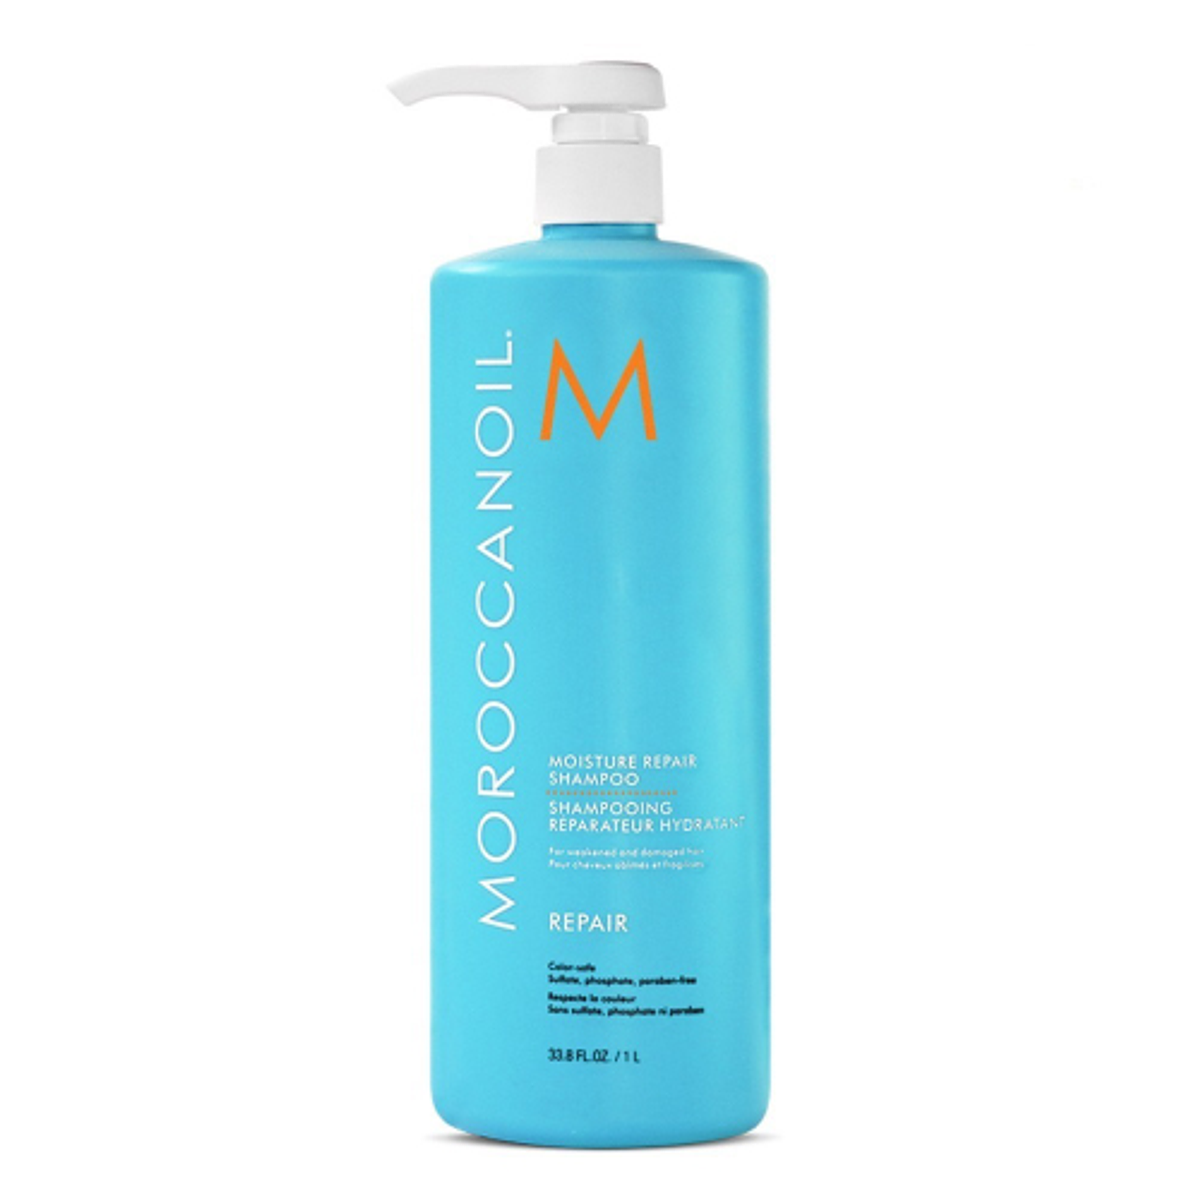 moroccanoil szampon repair 1000ml